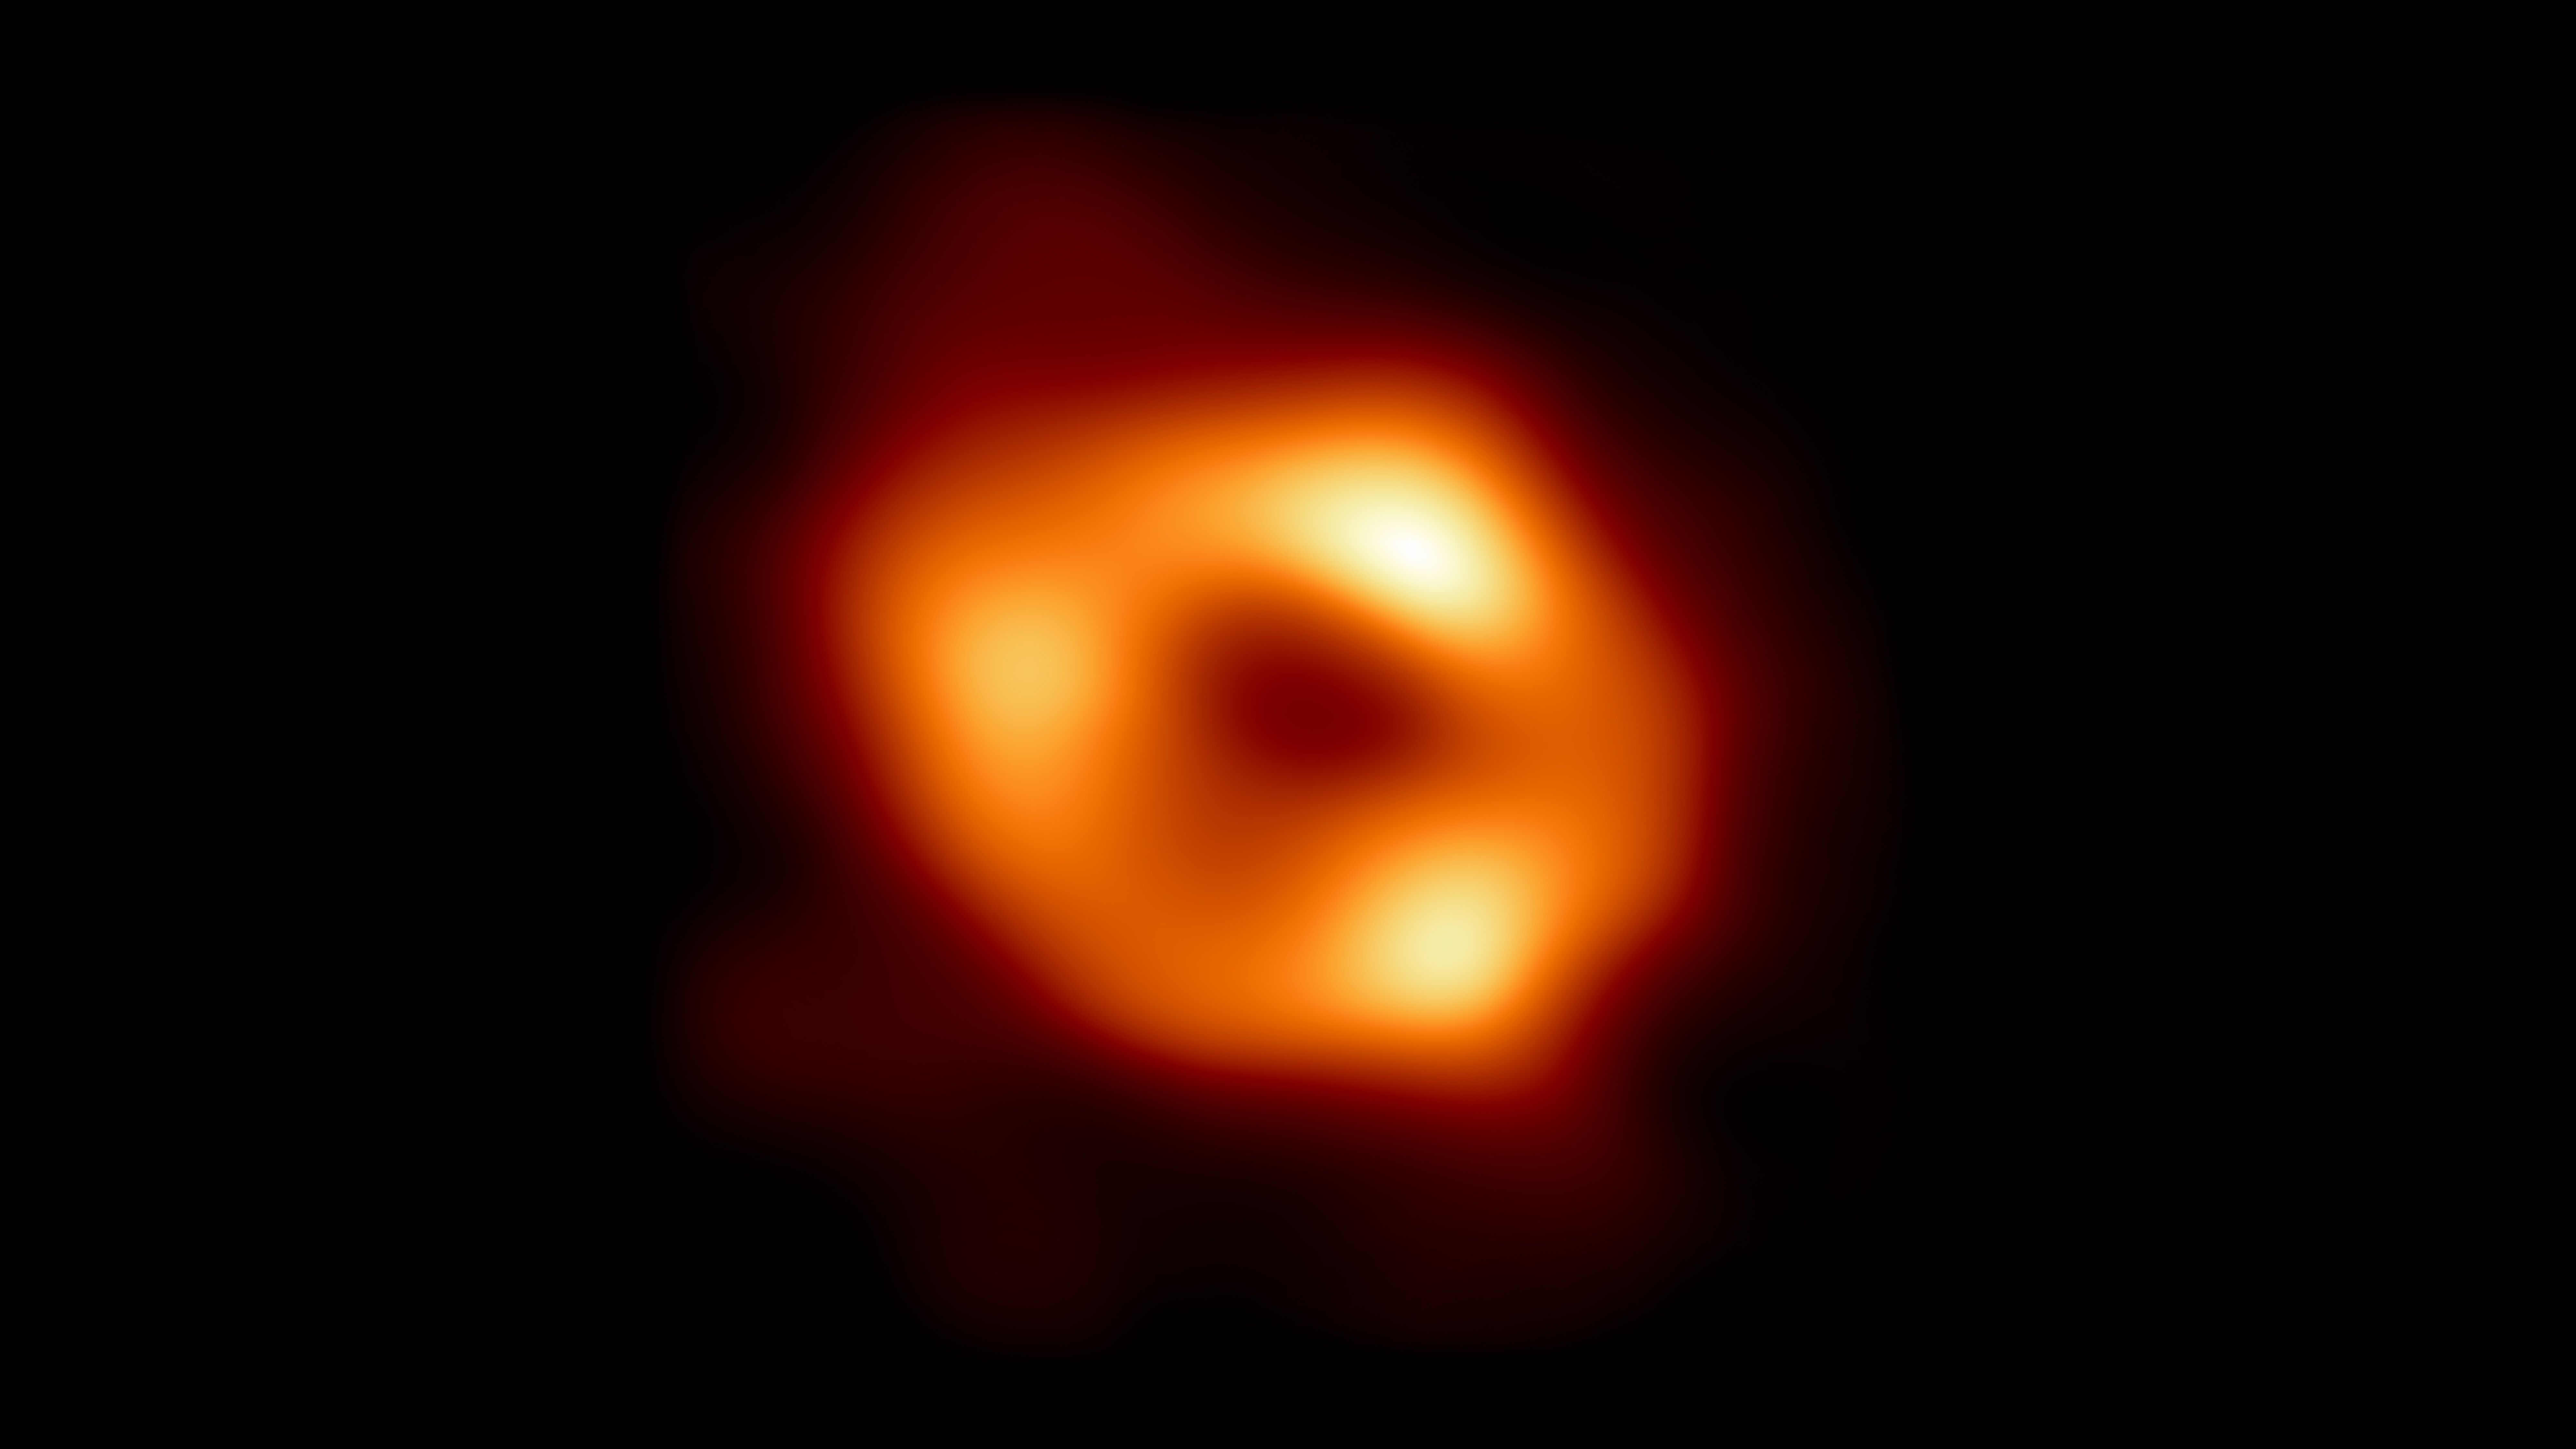 A Tejútrendszer központi fekete lyuka, a Sagittarius A*